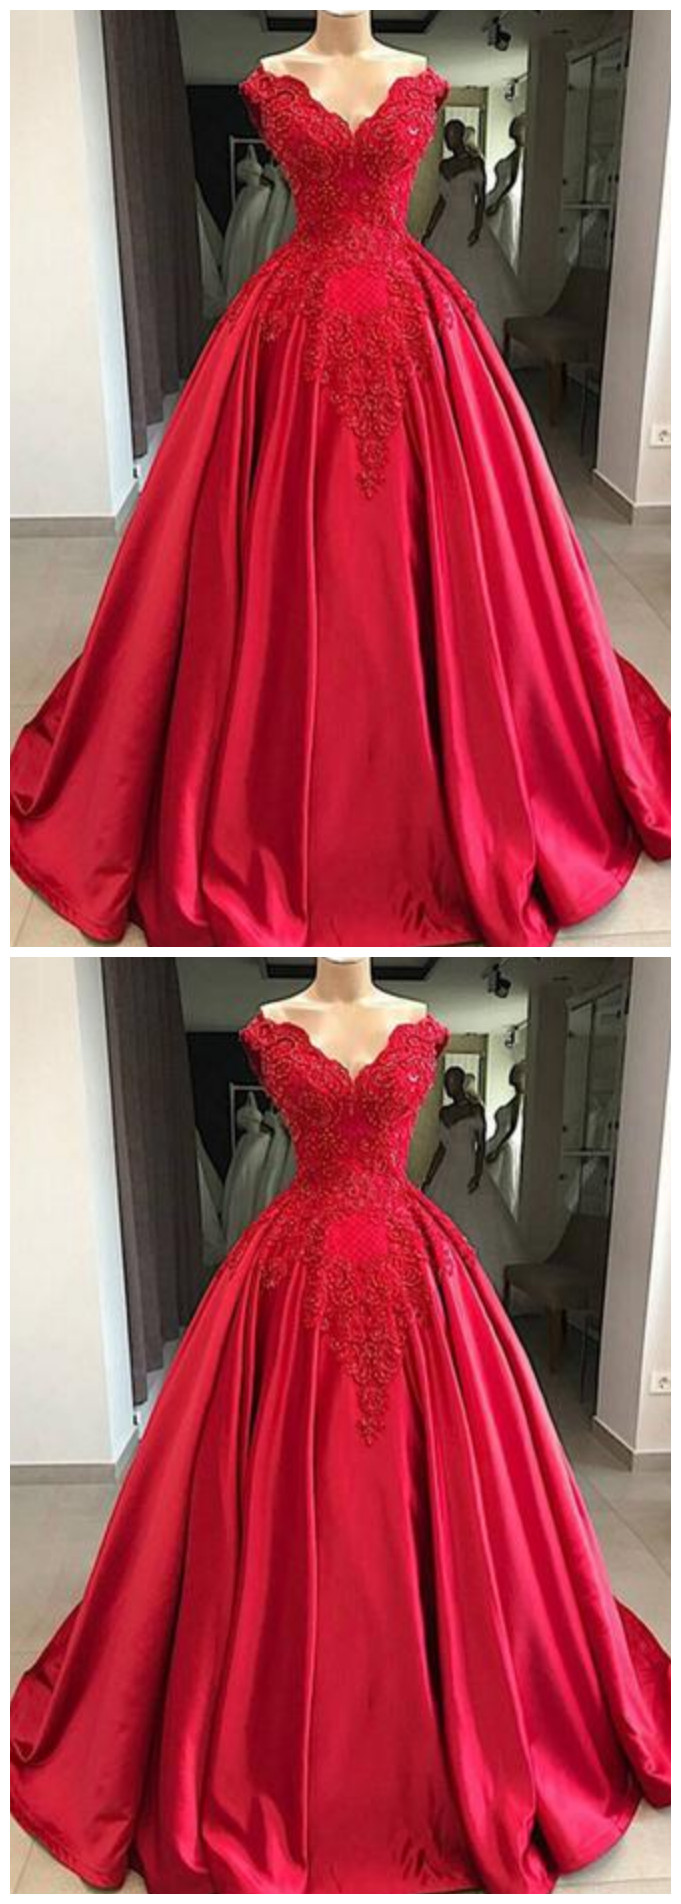 Red V Neck Off Shoulder Lace Beaded Prom Dresses Long Evening Dresses ...